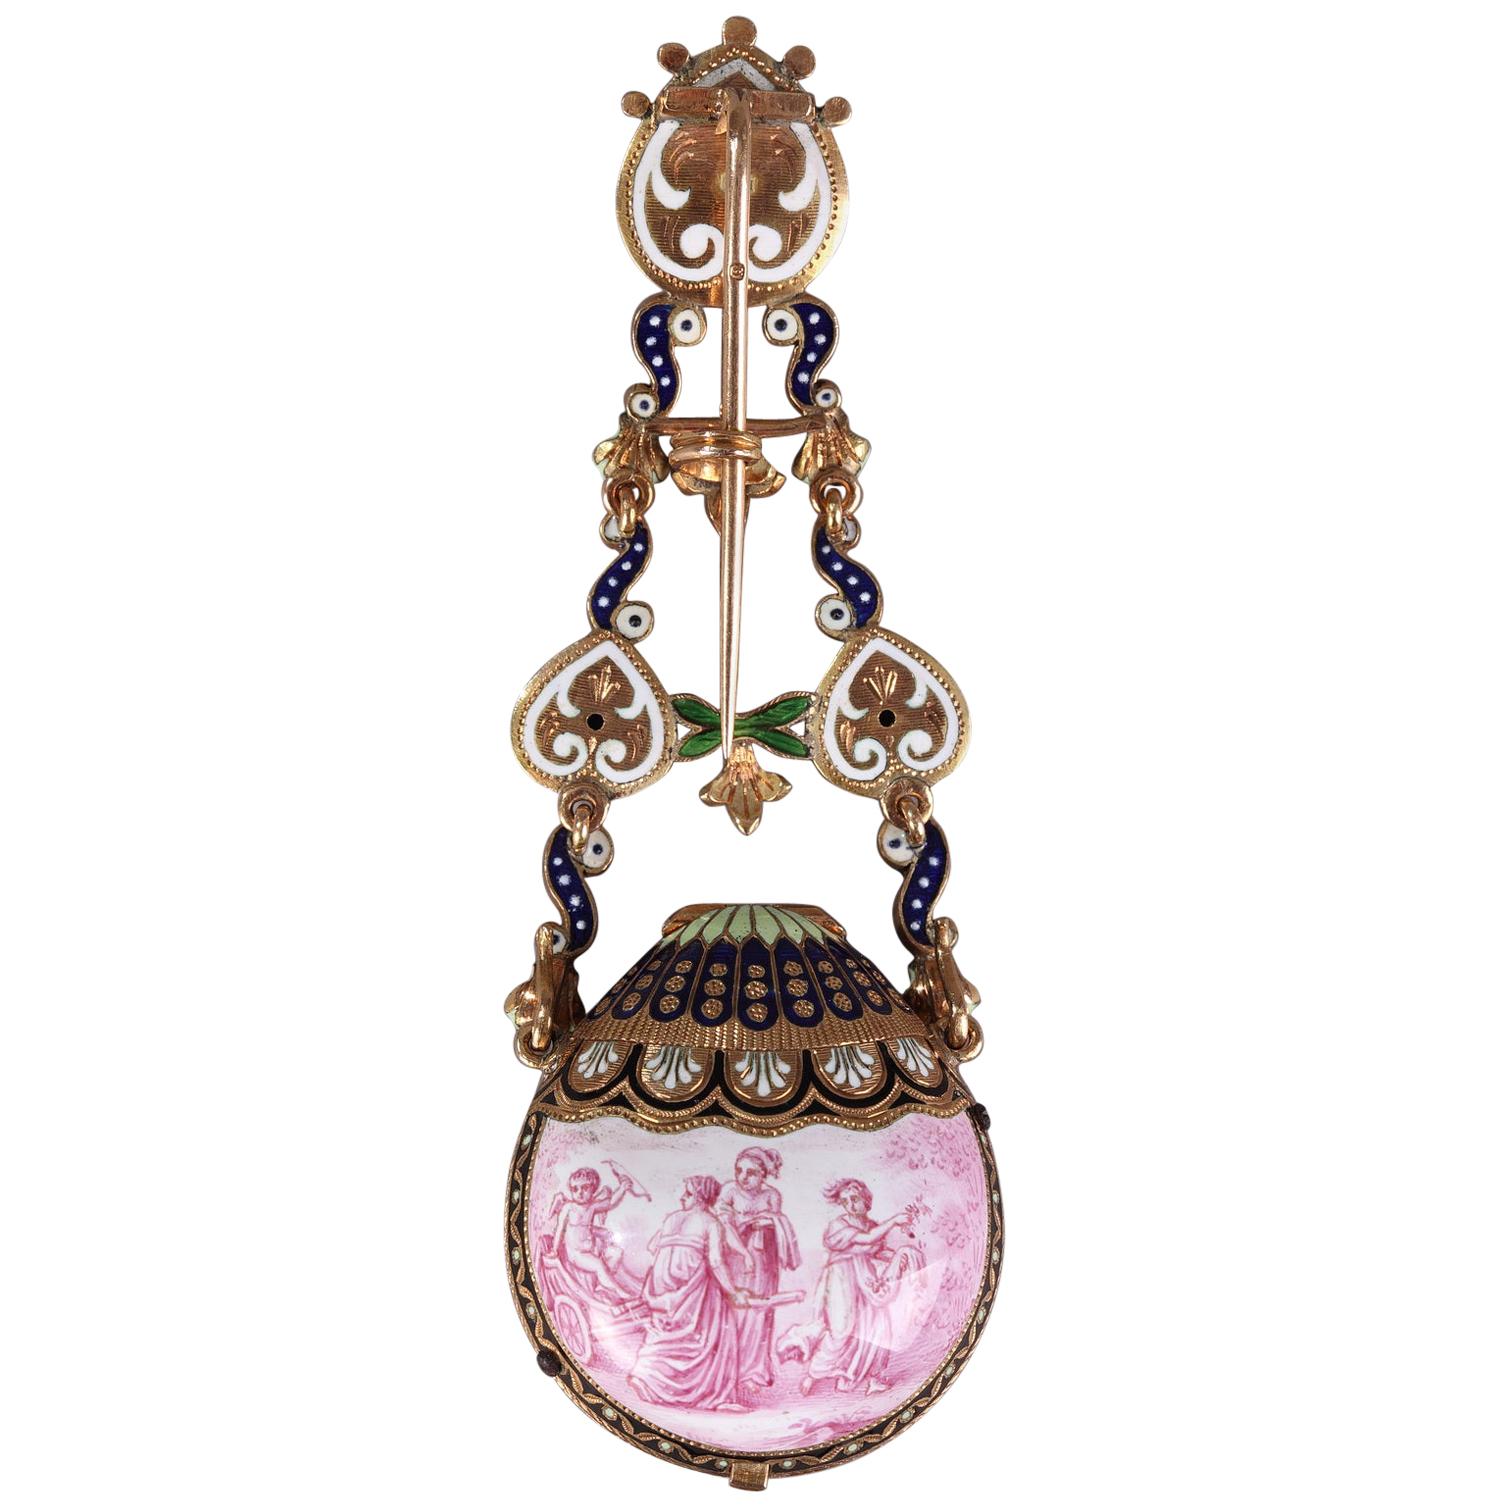 Montre/Chatelaine en or et émail, artisanat viennois, vers 1860-1870